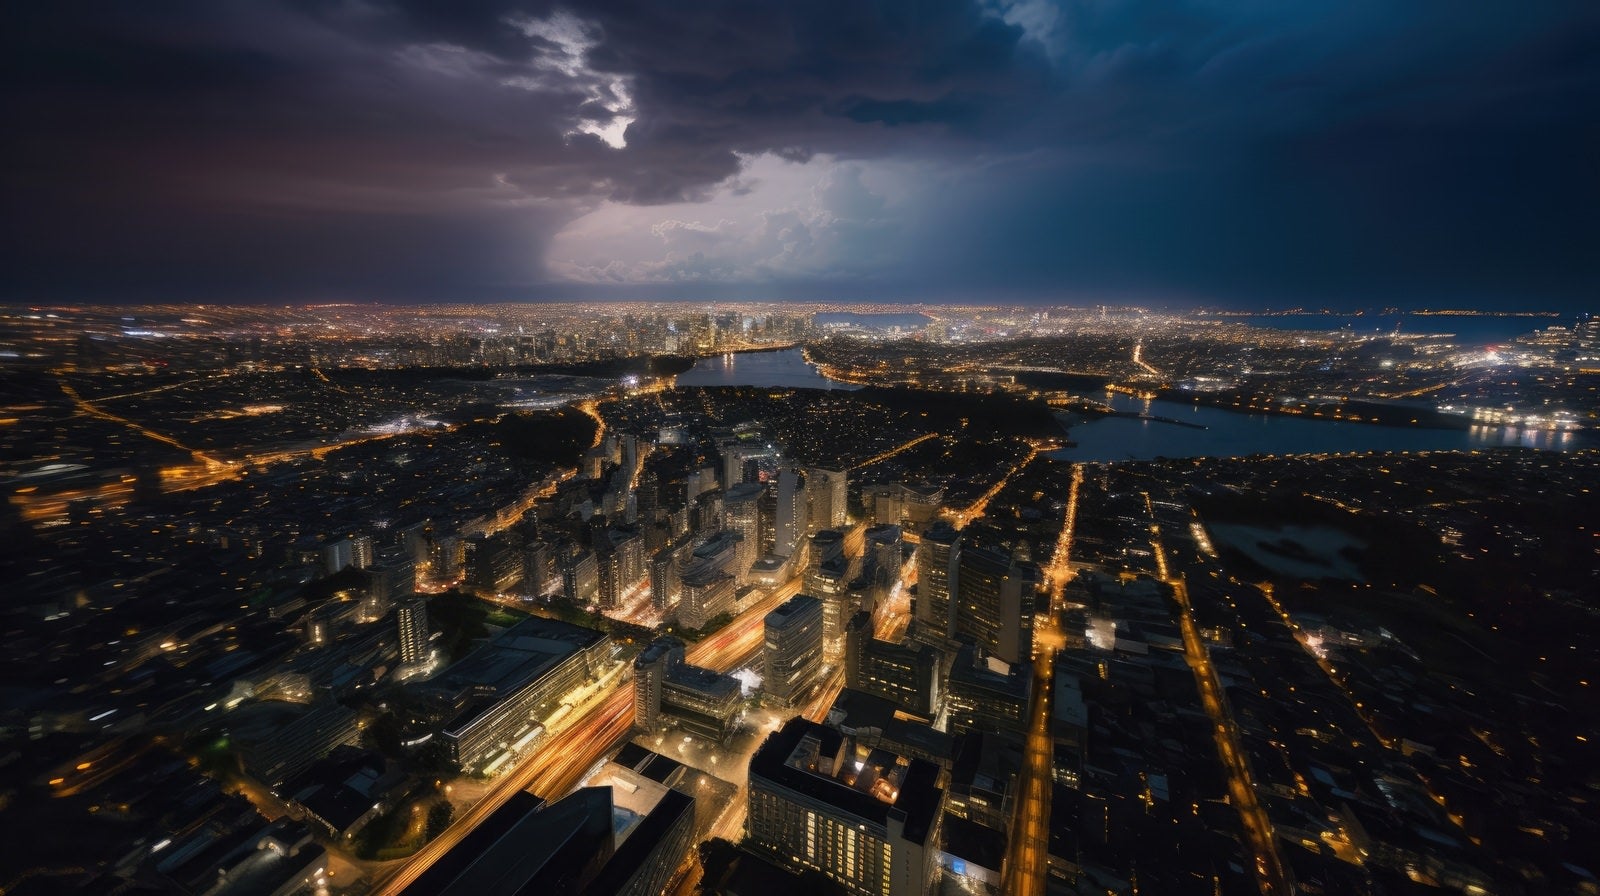 「都会の空に響く落雷」の写真